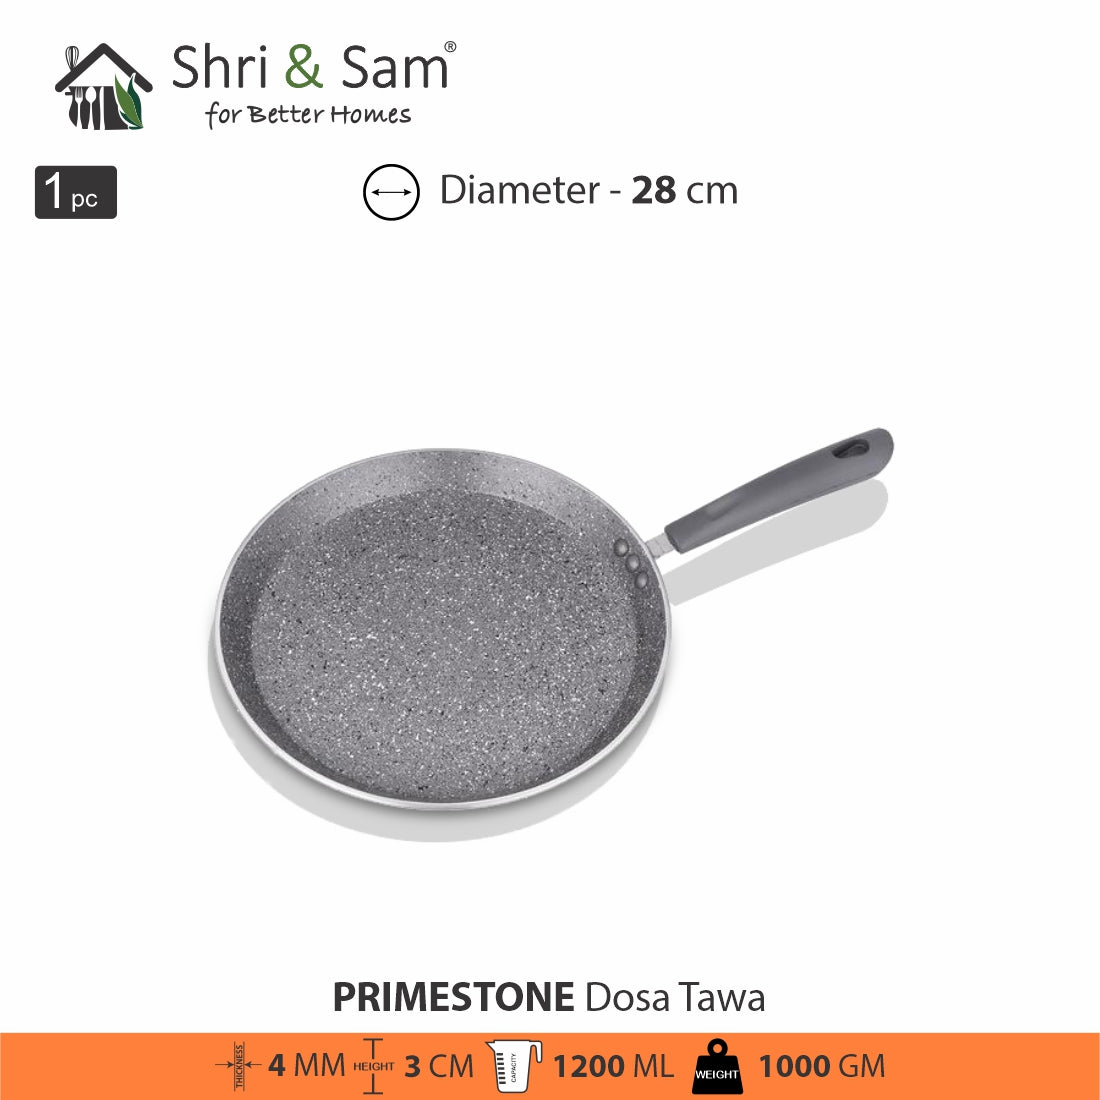 Aluminium Non-Stick Dosa Tawa Primestone